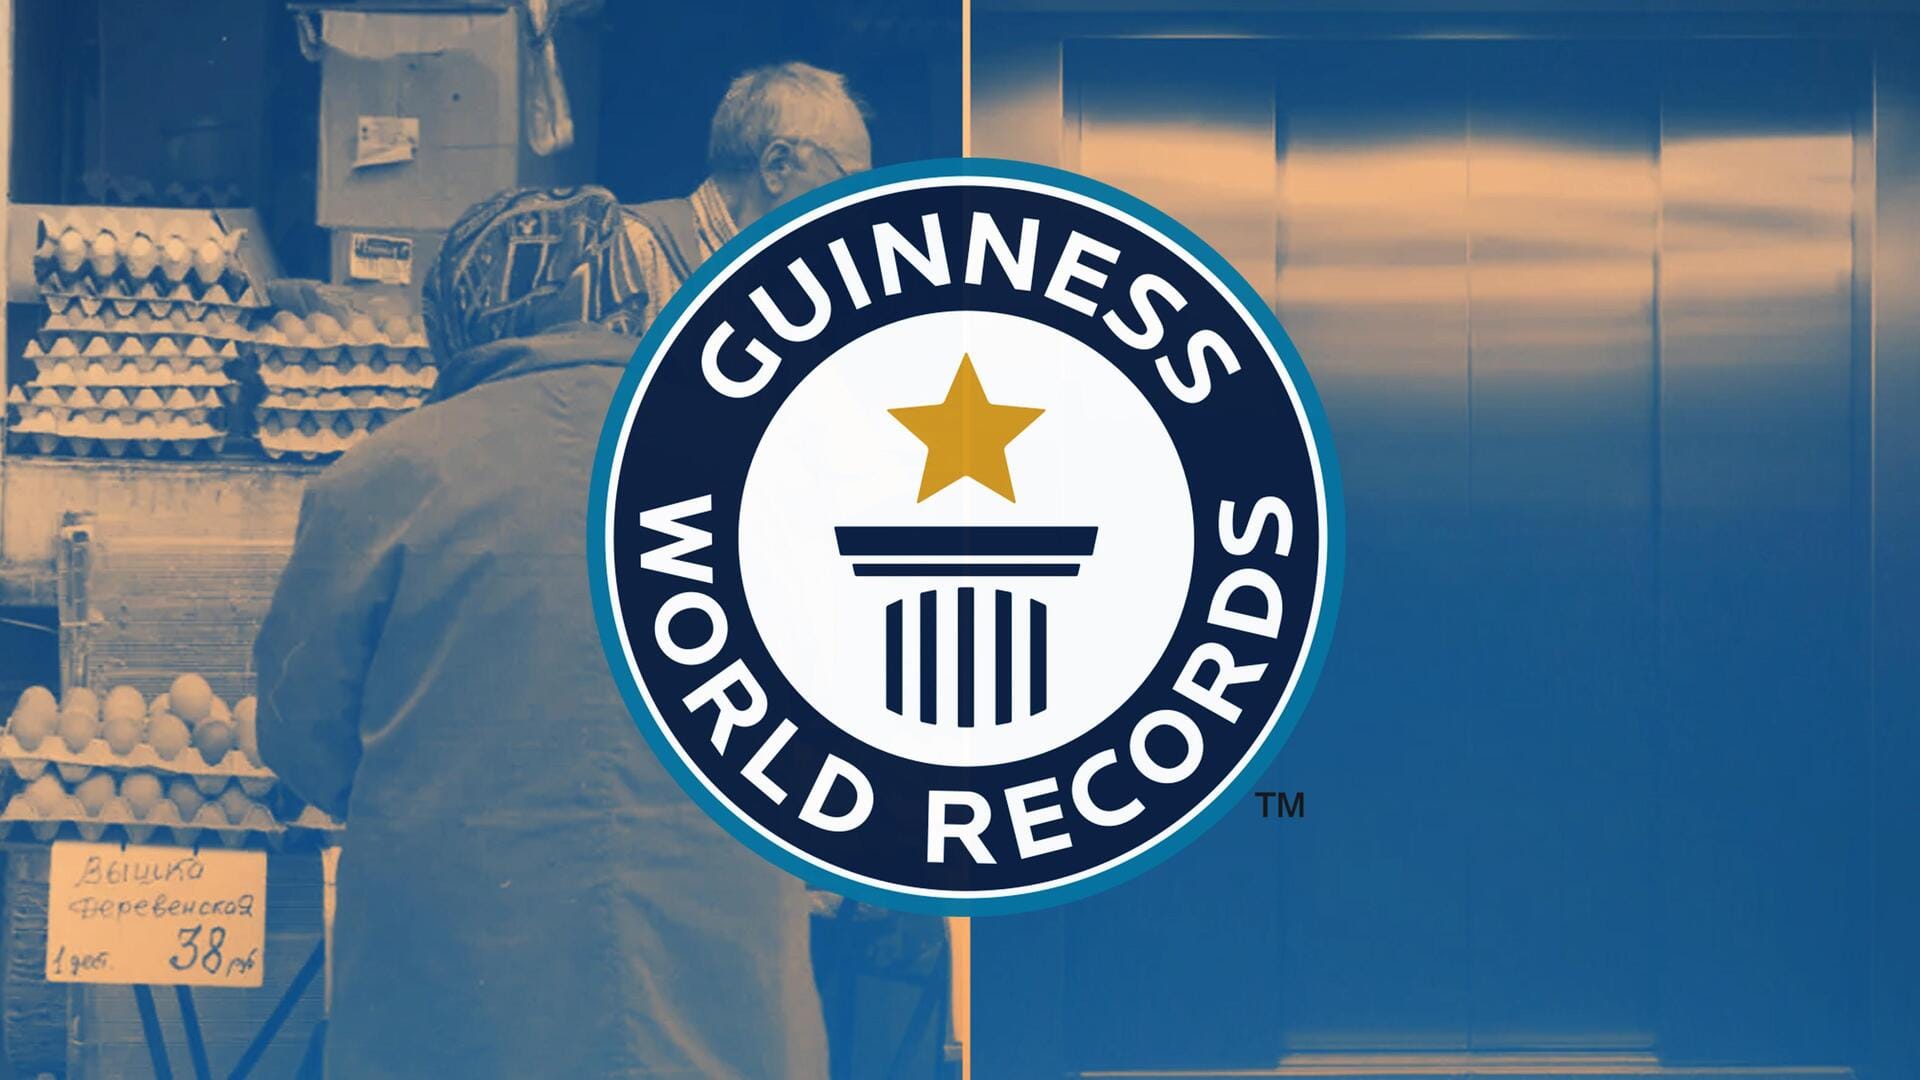 6 दिनों तक लिफ्ट में फंसी रहीं दादी, बाहर निकलीं तो बन चुका था विश्व रिकॉर्ड